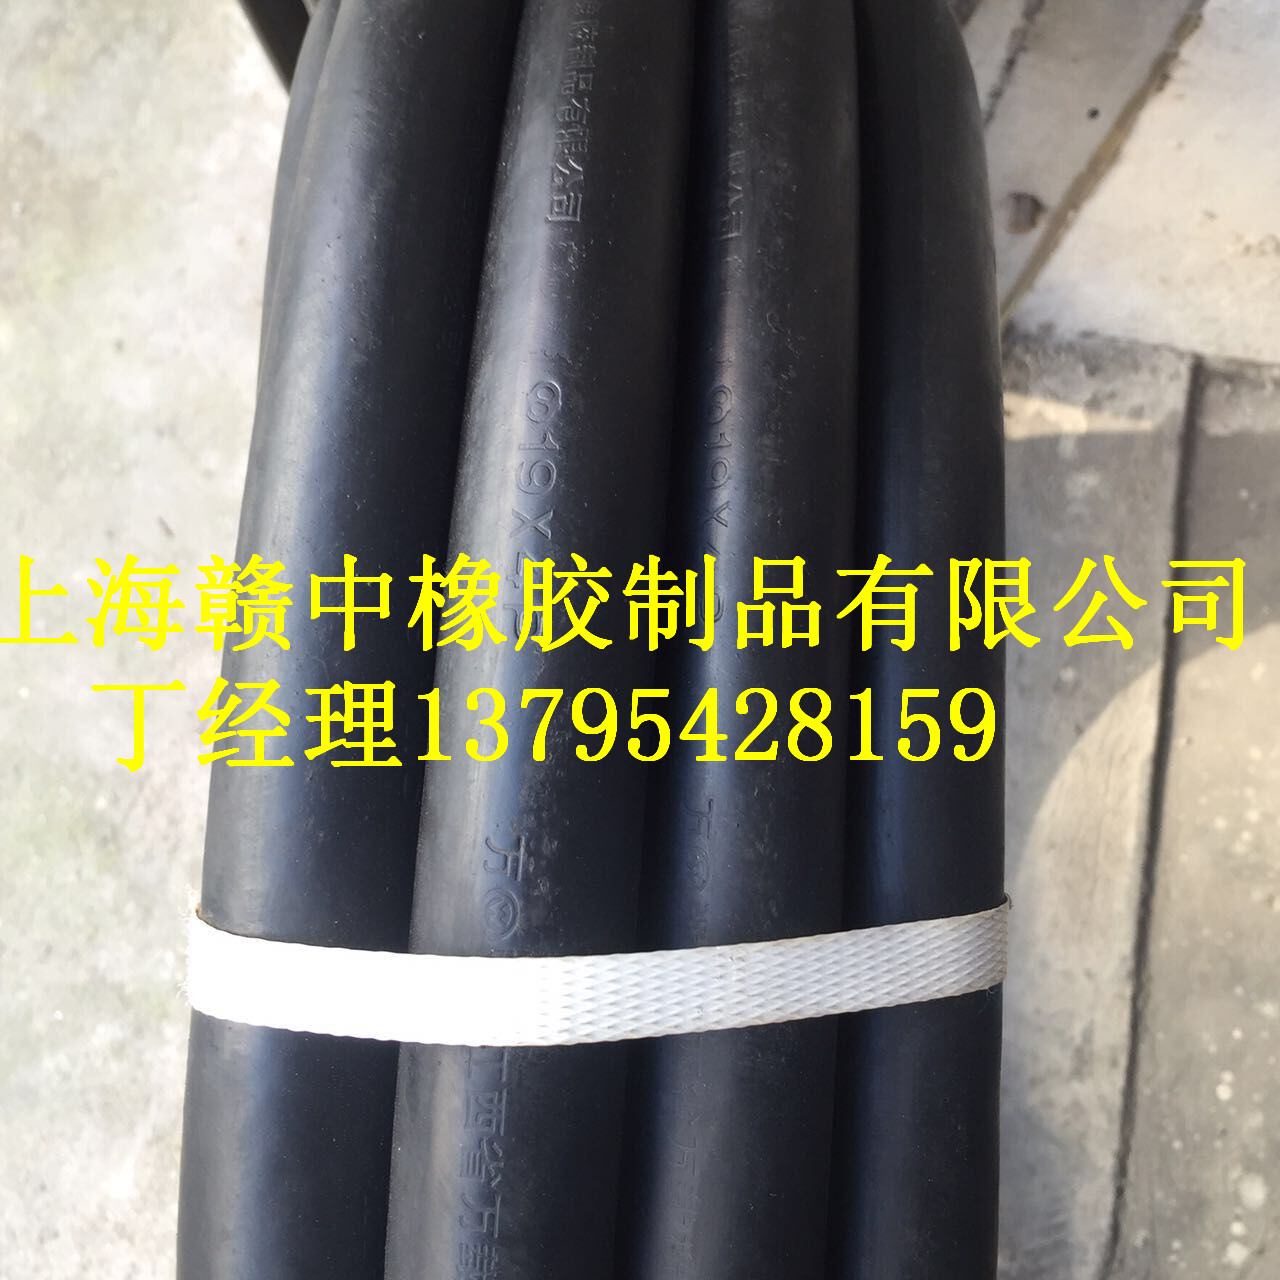 厂家直销夹布橡胶管、上海夹布橡胶管厂家直销 上海夹布橡胶管批发